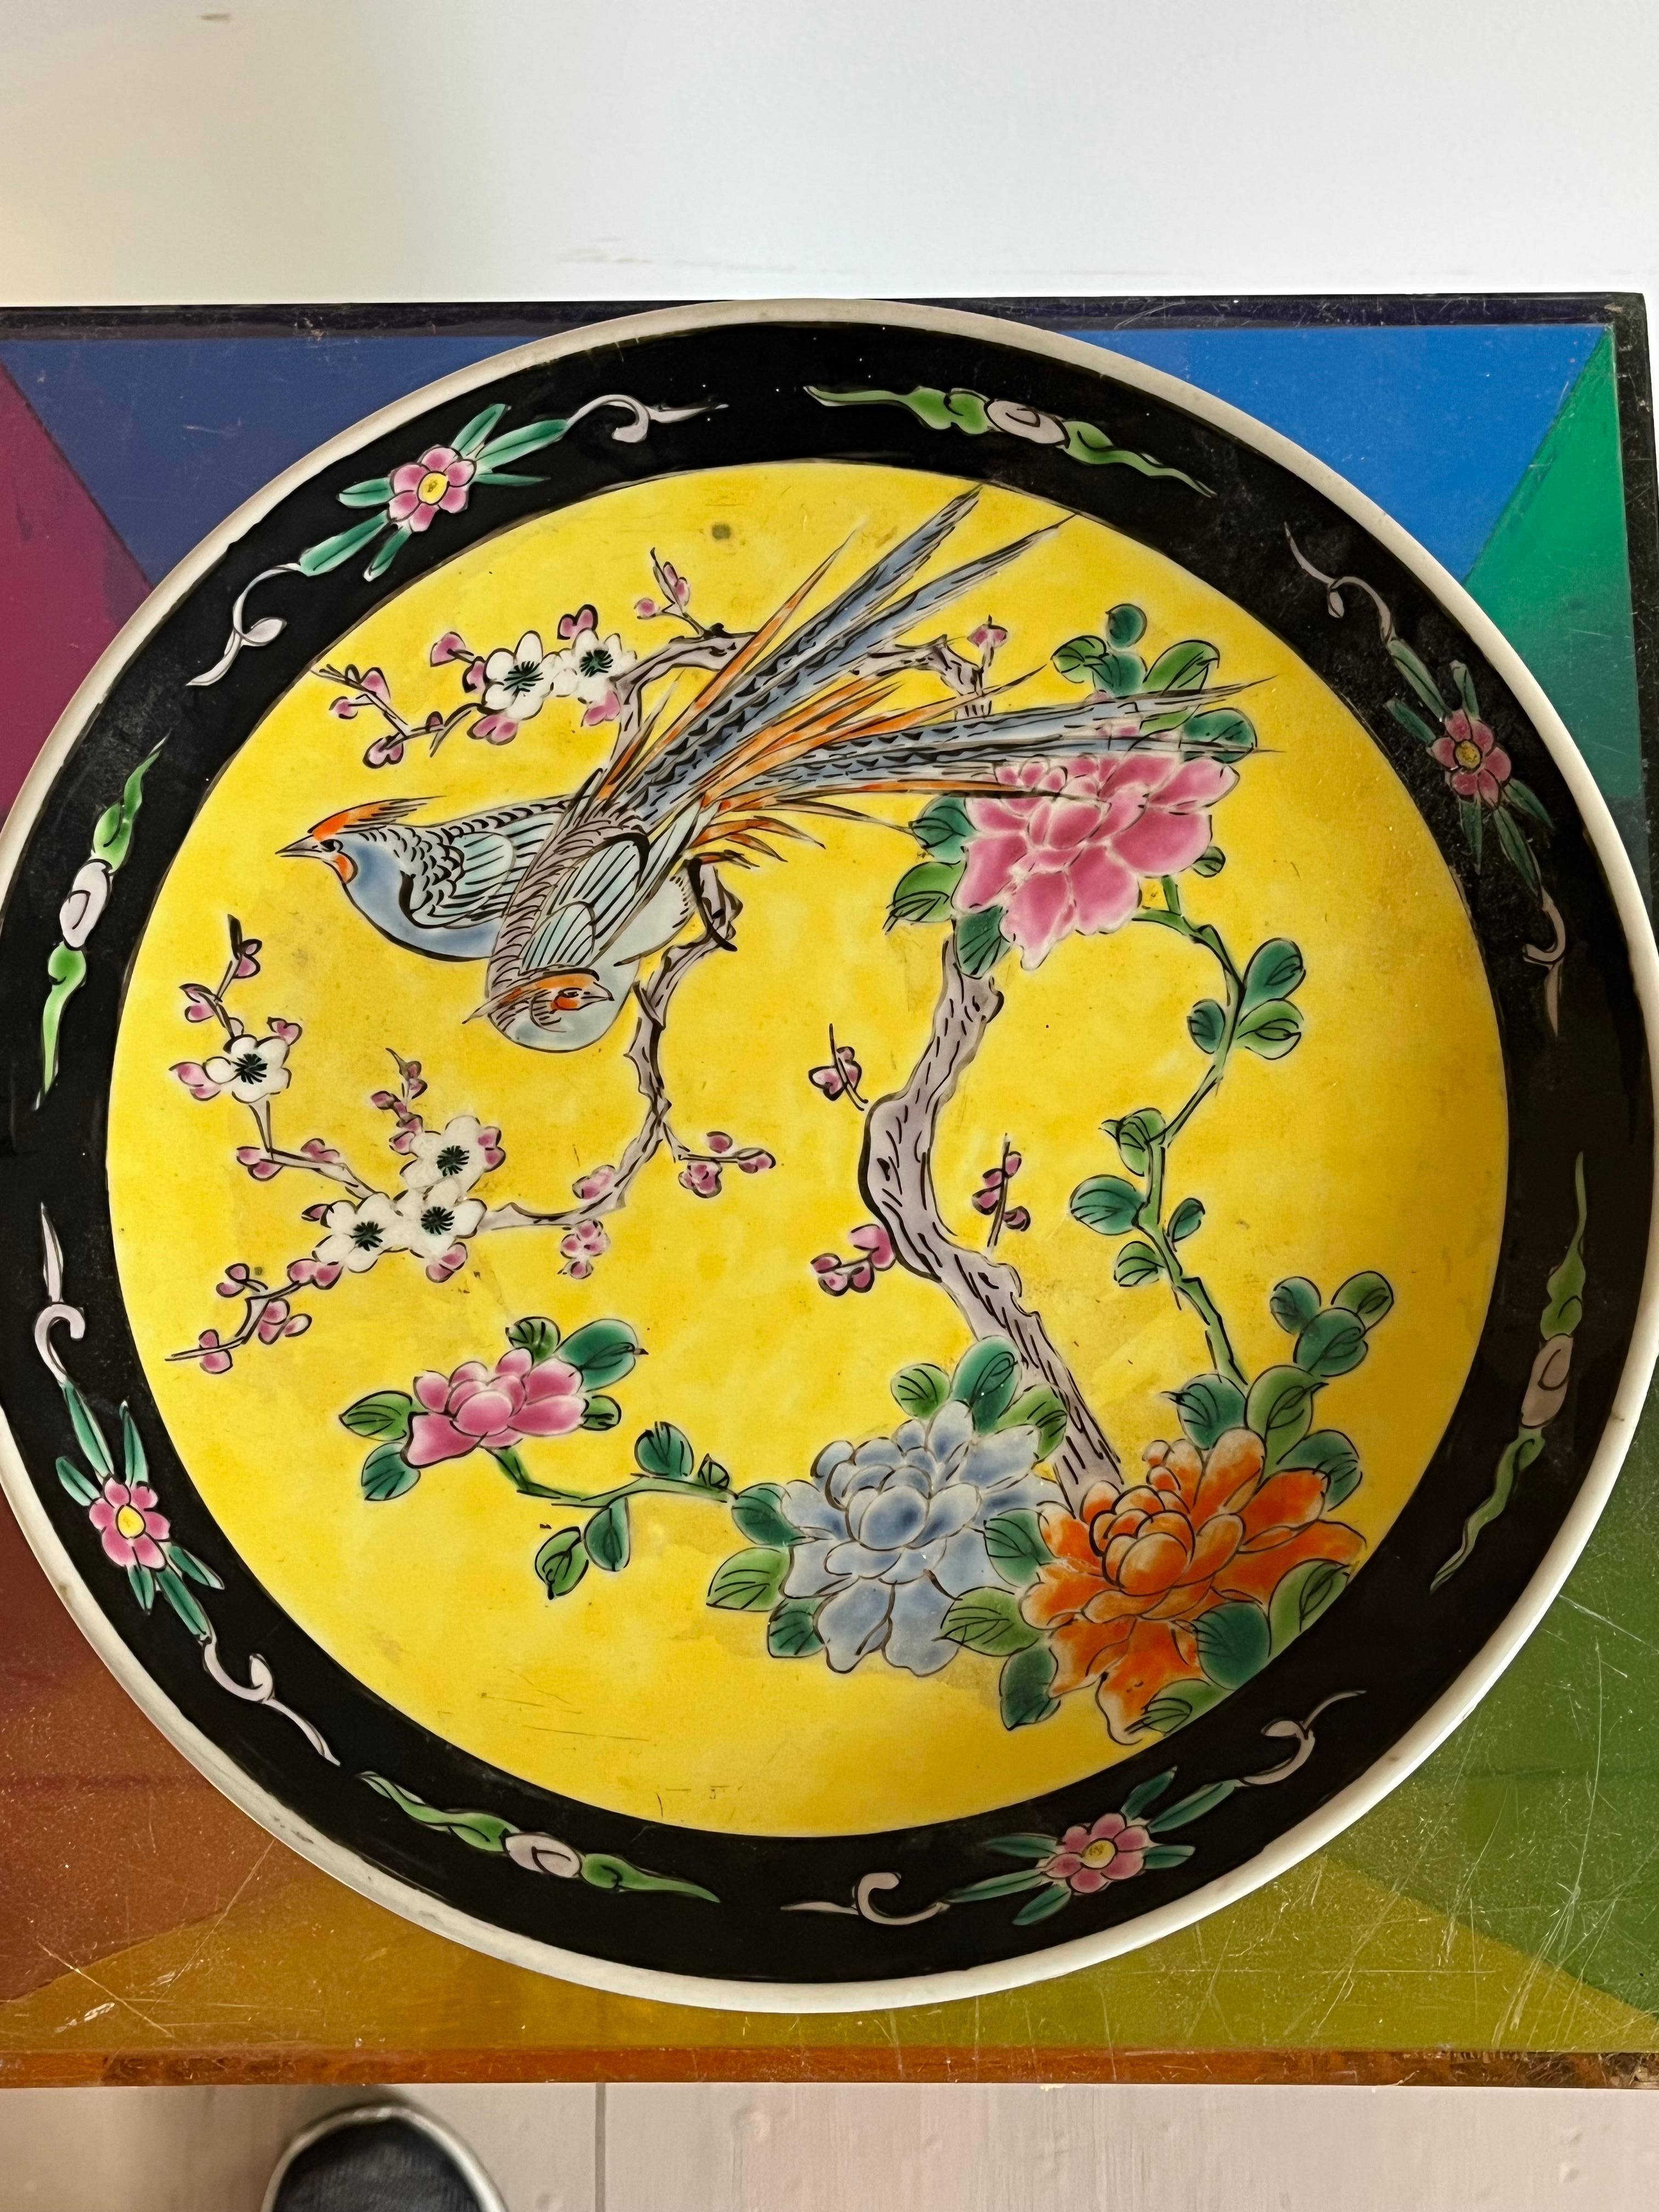 Assiette décorative chinoise peinte à la main dans le style Famille Jaune, de la période Qing vers 1900, représentant un couple d'oiseaux dans un cerisier en fleurs. 